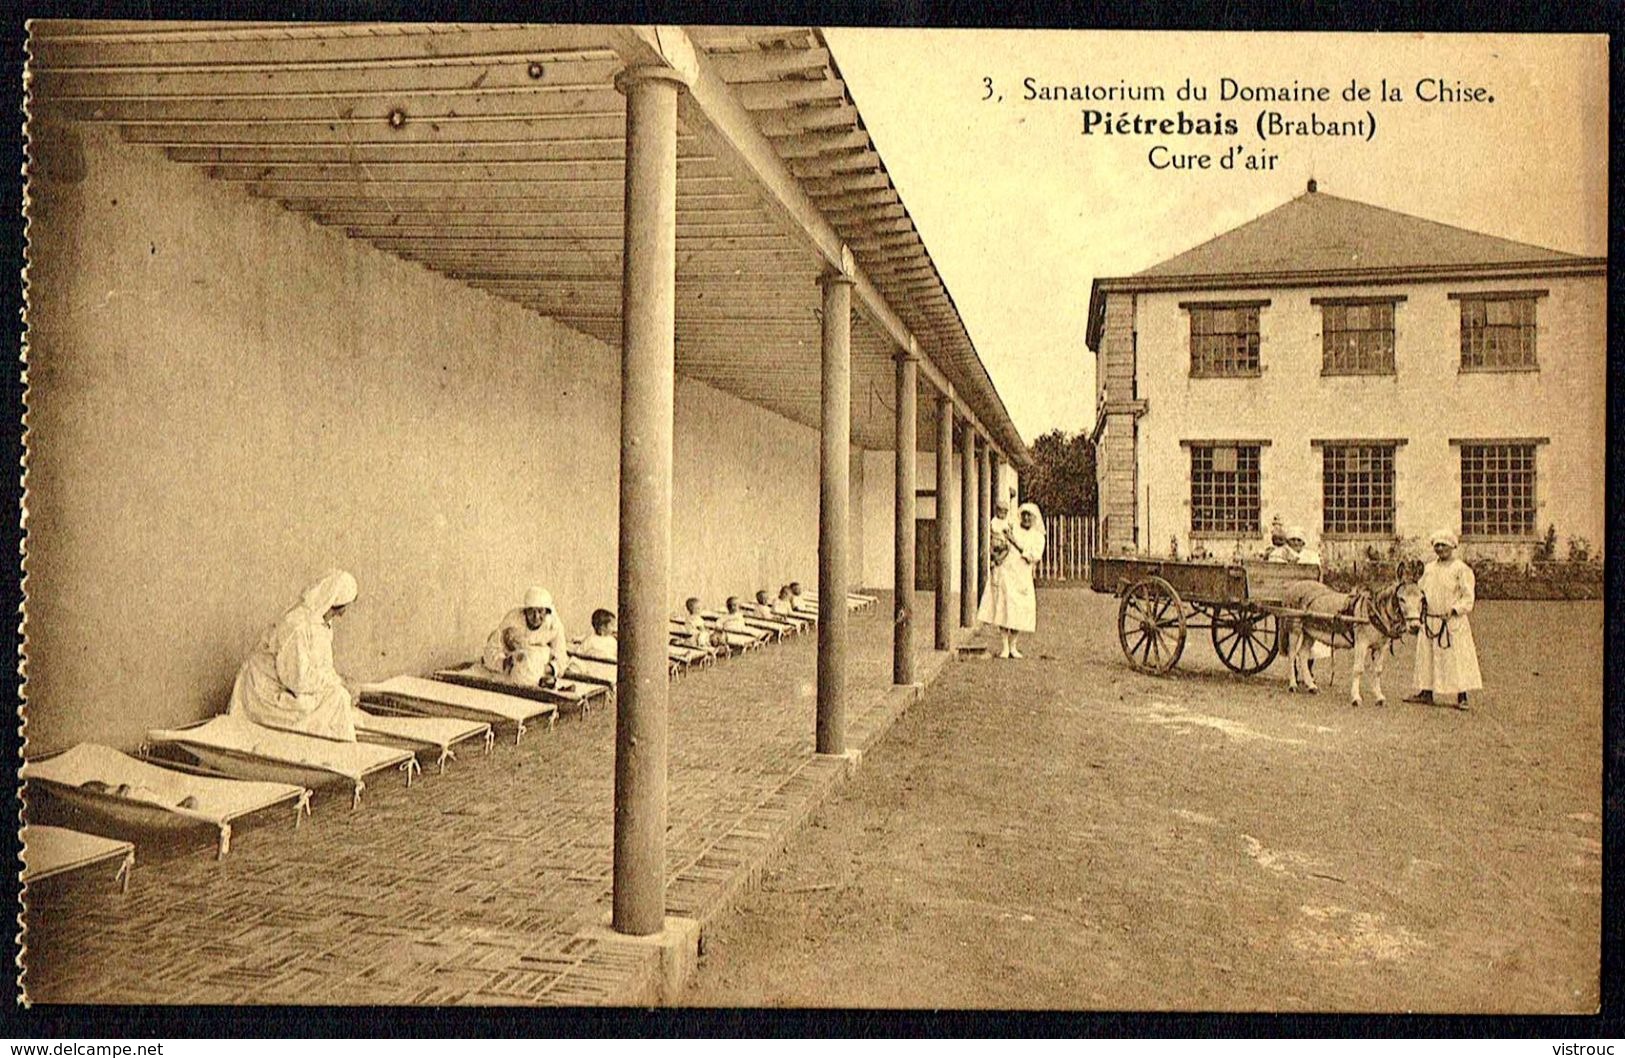 PIETREBAIS - Sanatorium Du Domaine De La Chise - Cure D'air - Non Circulé - Not Circulated - Nicht Gelaufen - Incourt